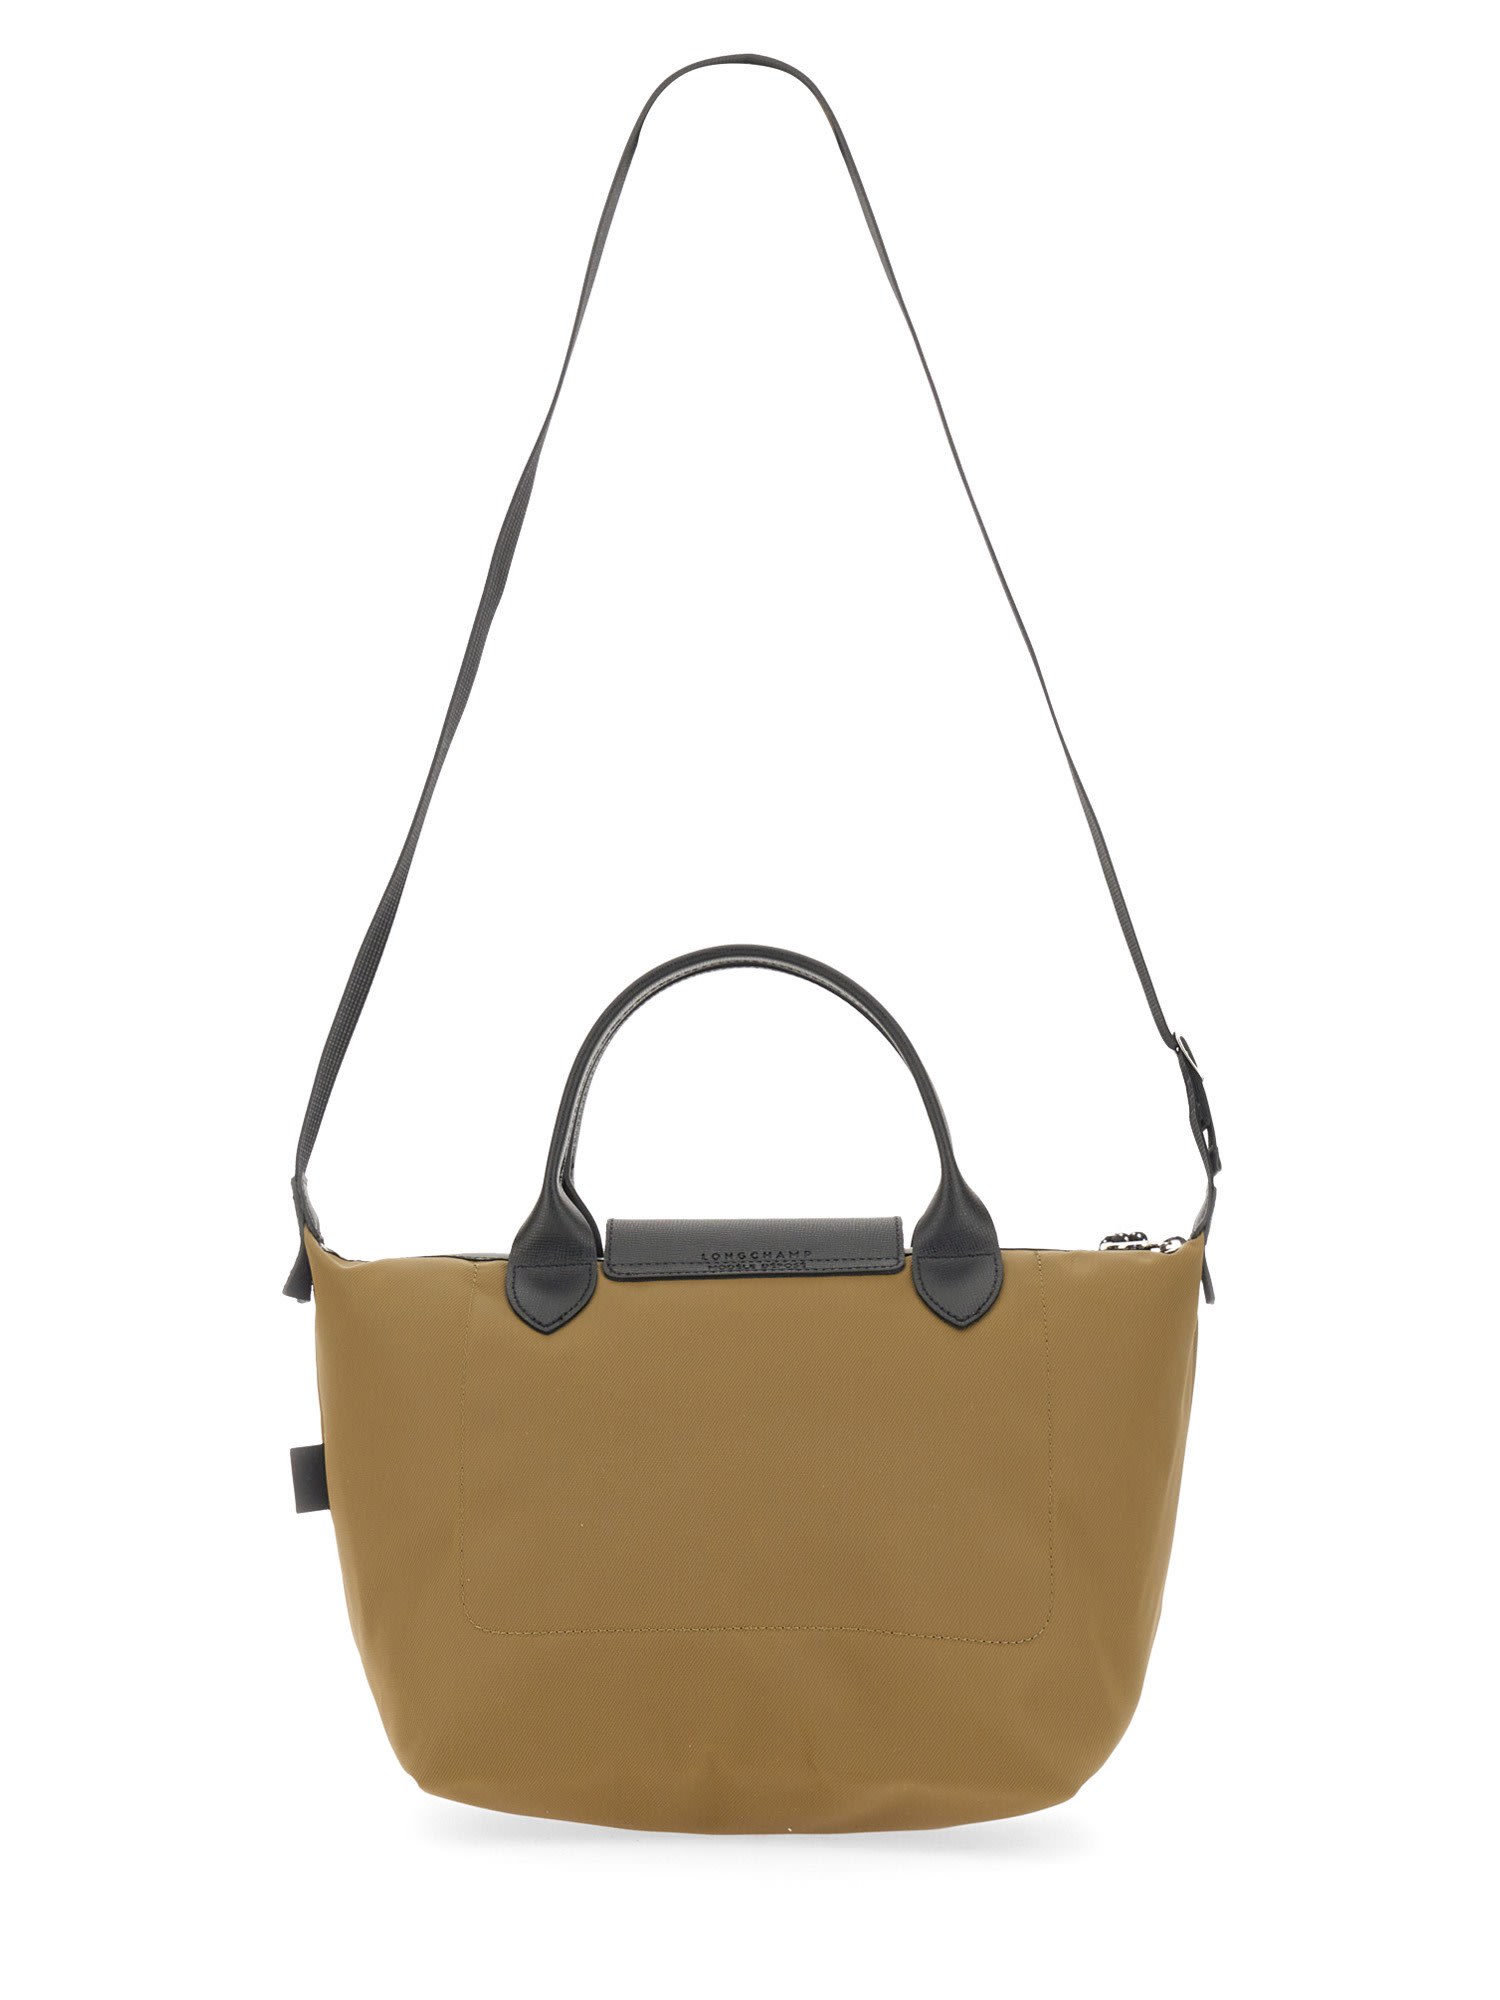 Longchamp Bag With Handle le Pliage M